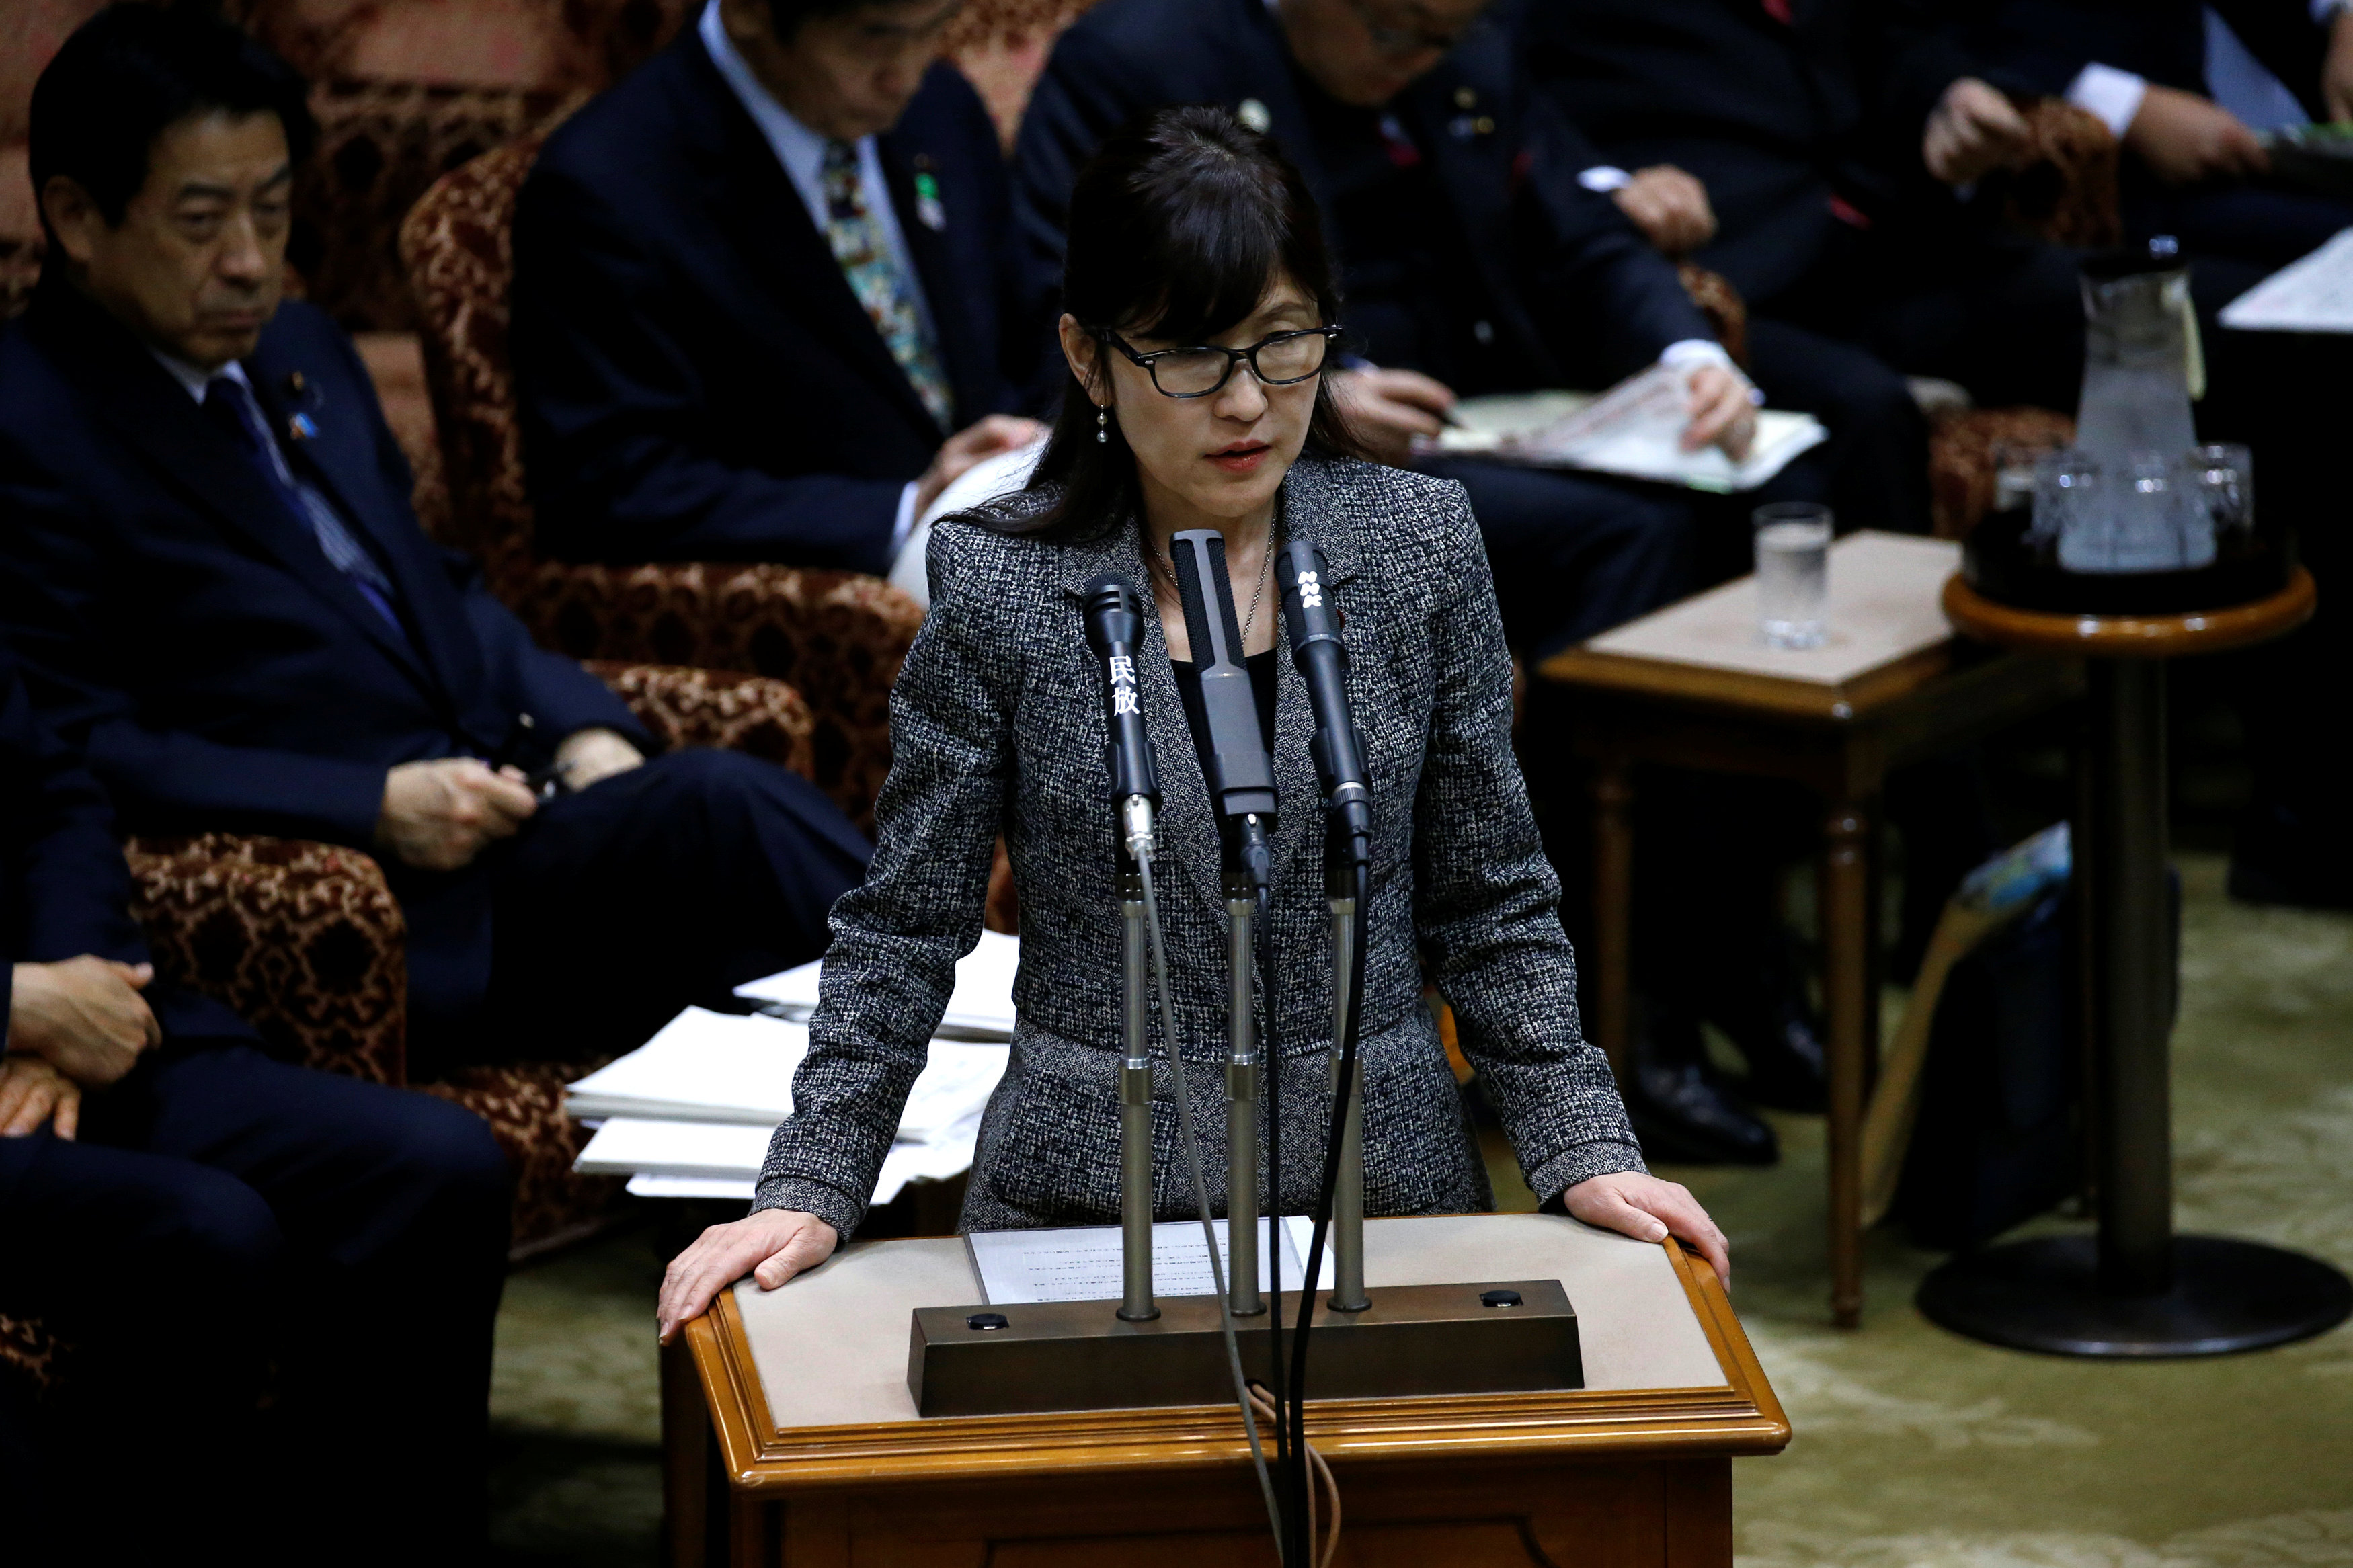 تومومى إينادا وزيرة الدفاع اليابانية  تعطى تصريحات صحفية